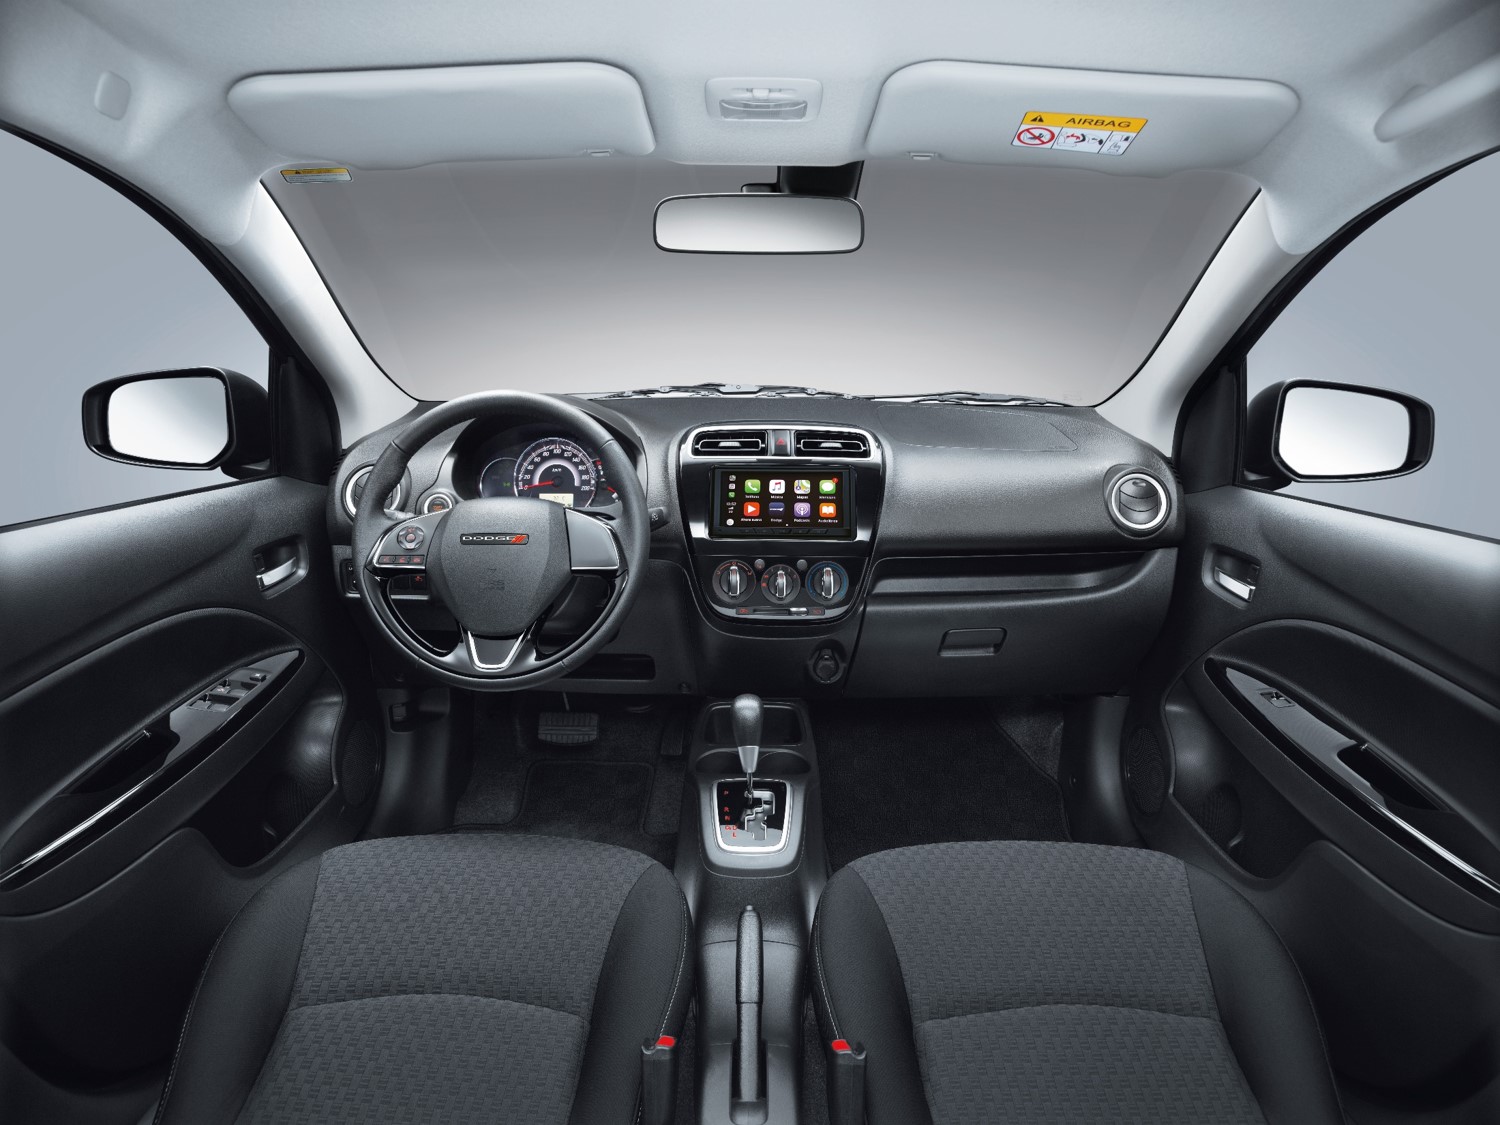 Dodge Attitude 2019 Interior1 